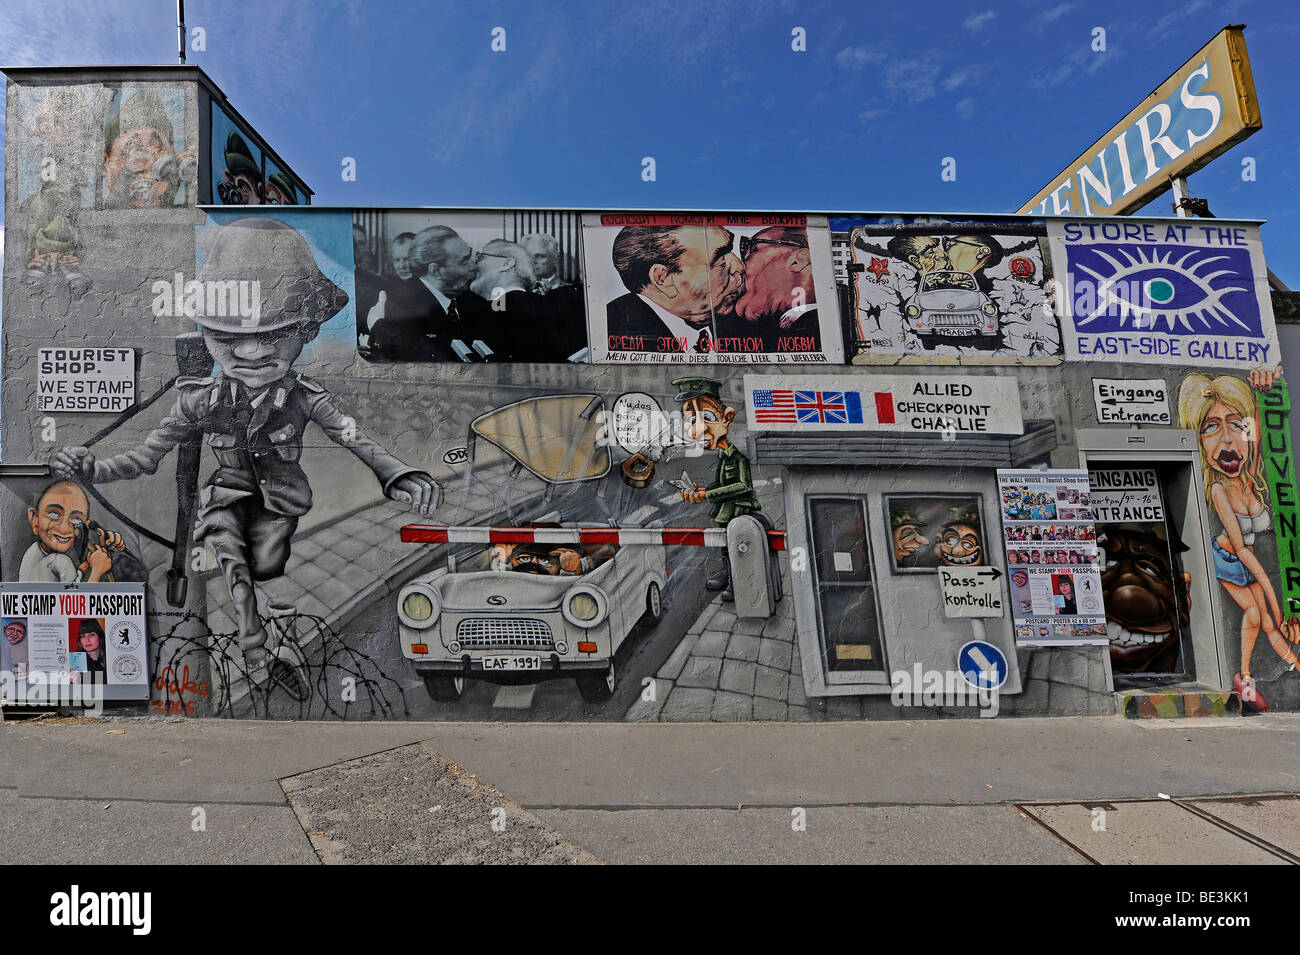 Teil der East Side Gallery, Stück der Berliner Mauer gemalt, nach dem Fall der Berliner Mauer, Berlin, Deutschland, Europa Stockfoto